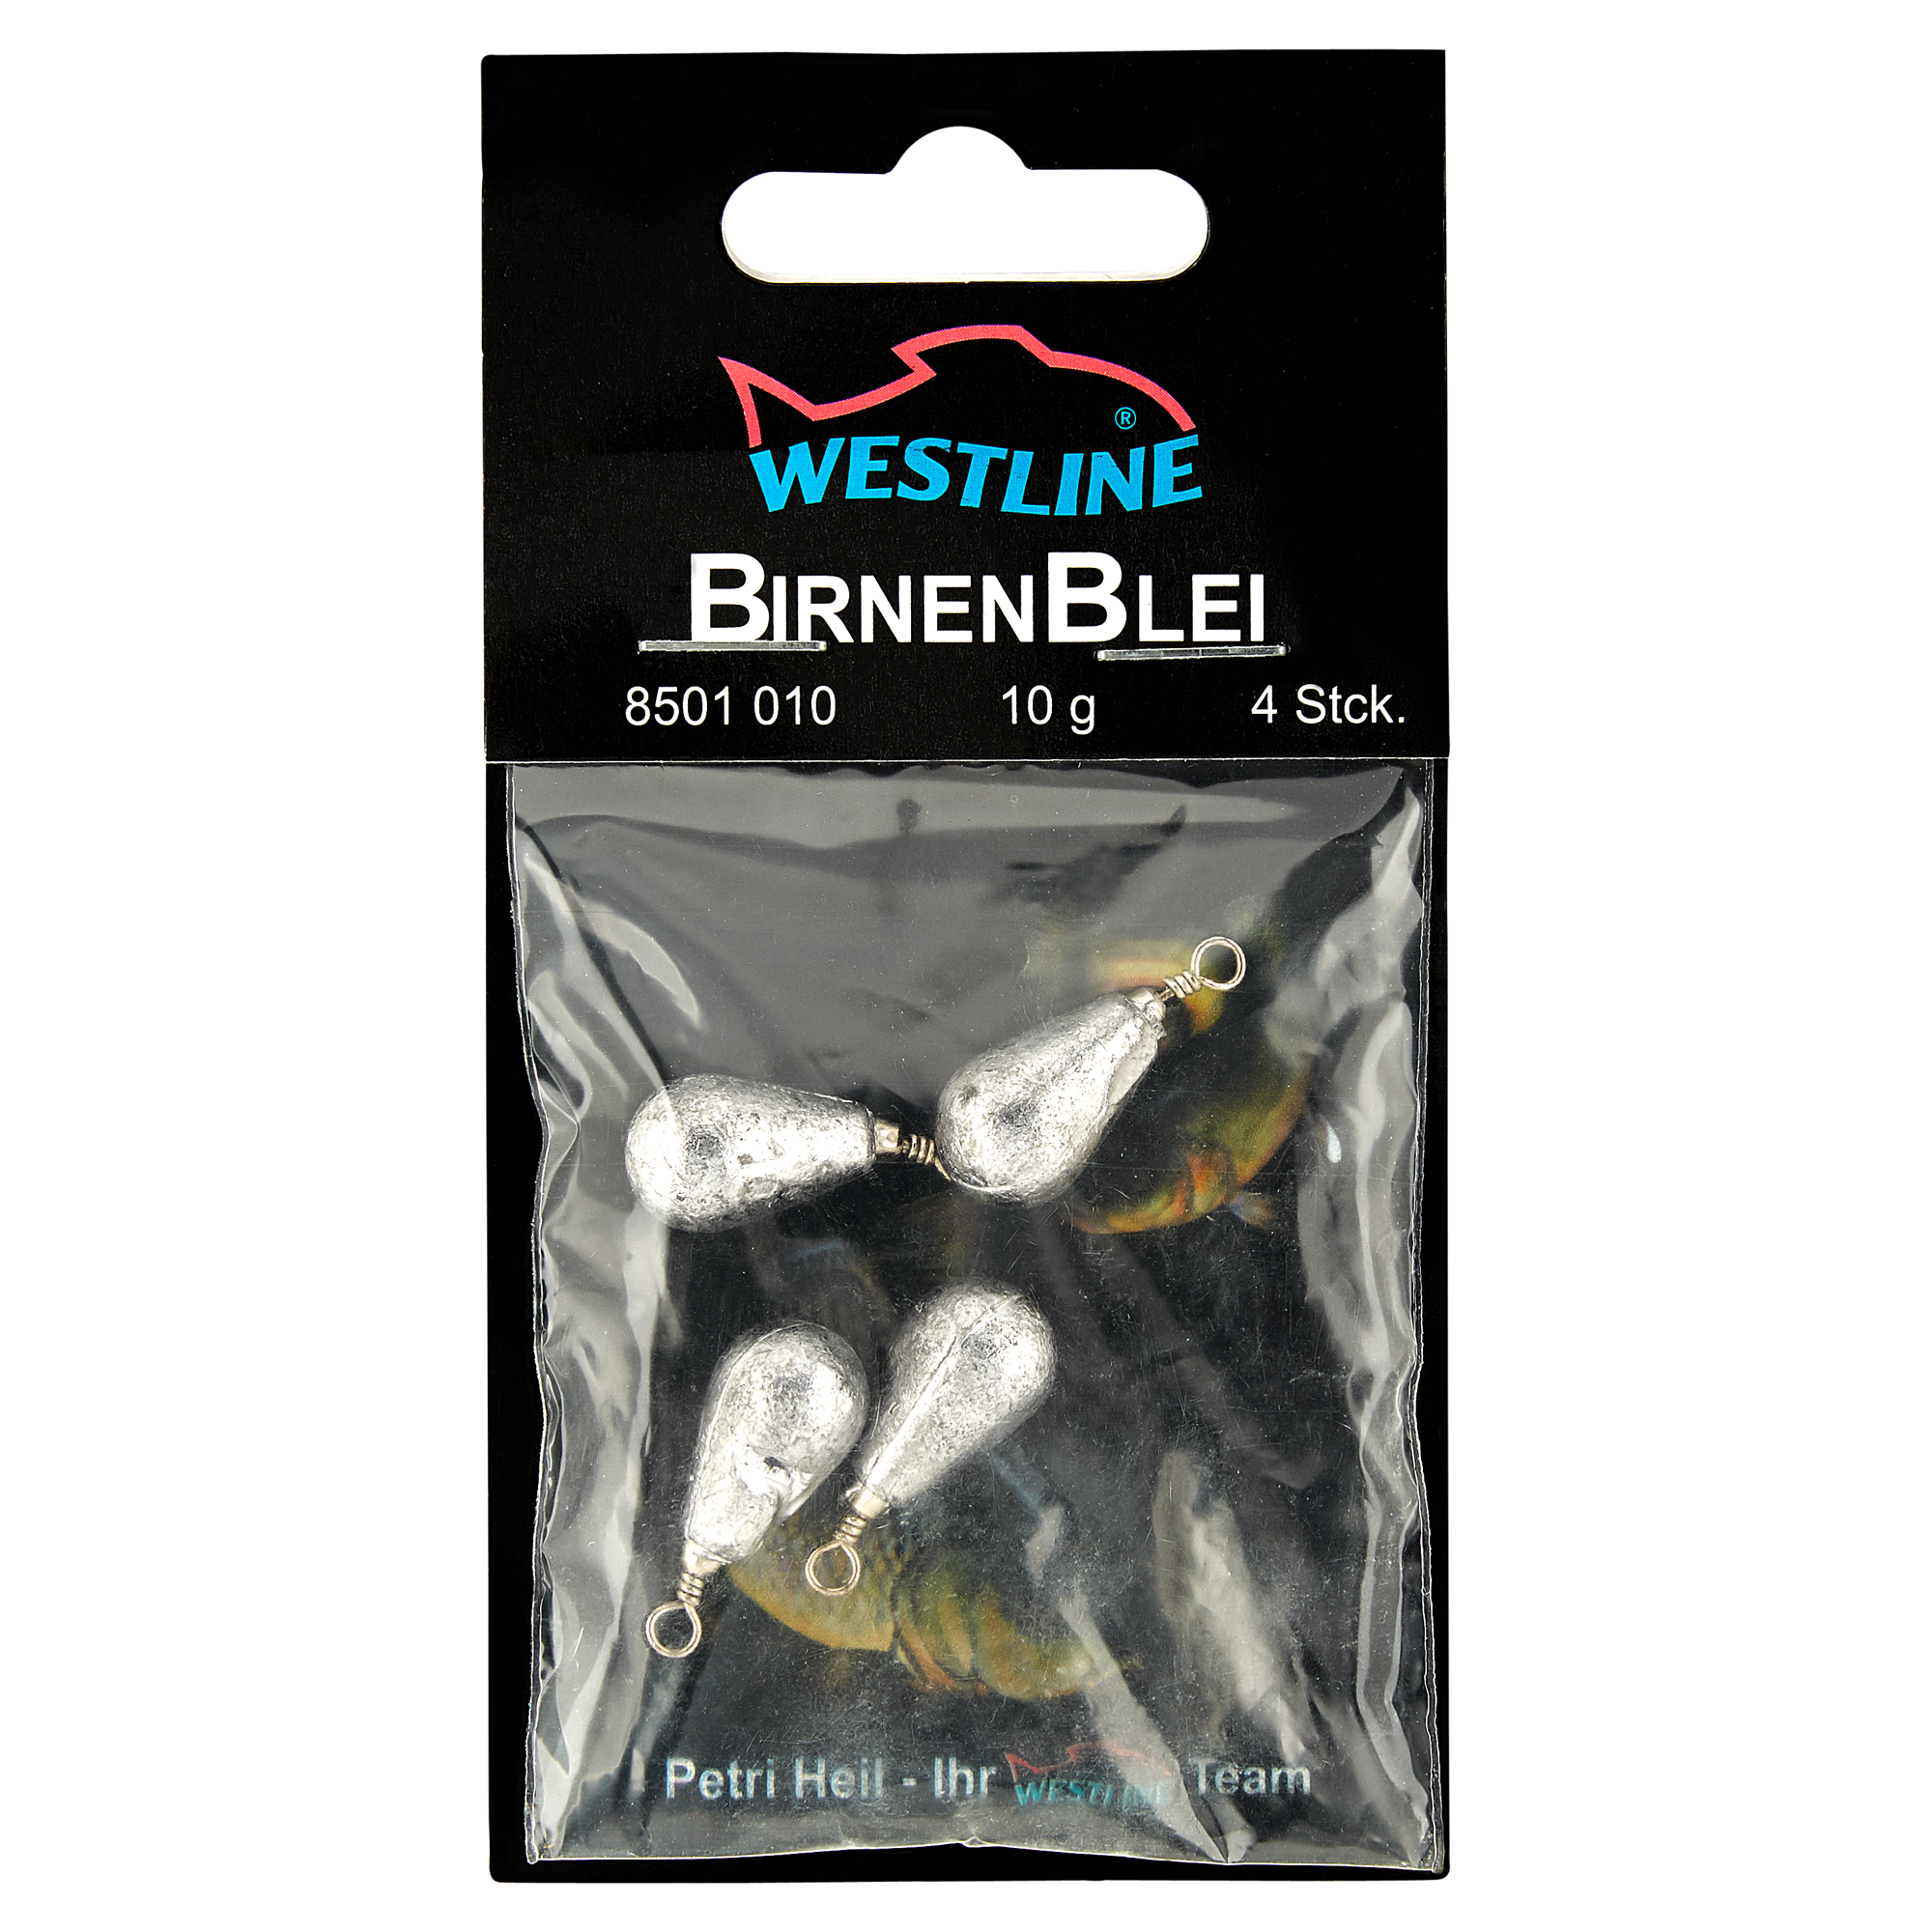 Birnenbleie mit Wirbel 10 g + product picture